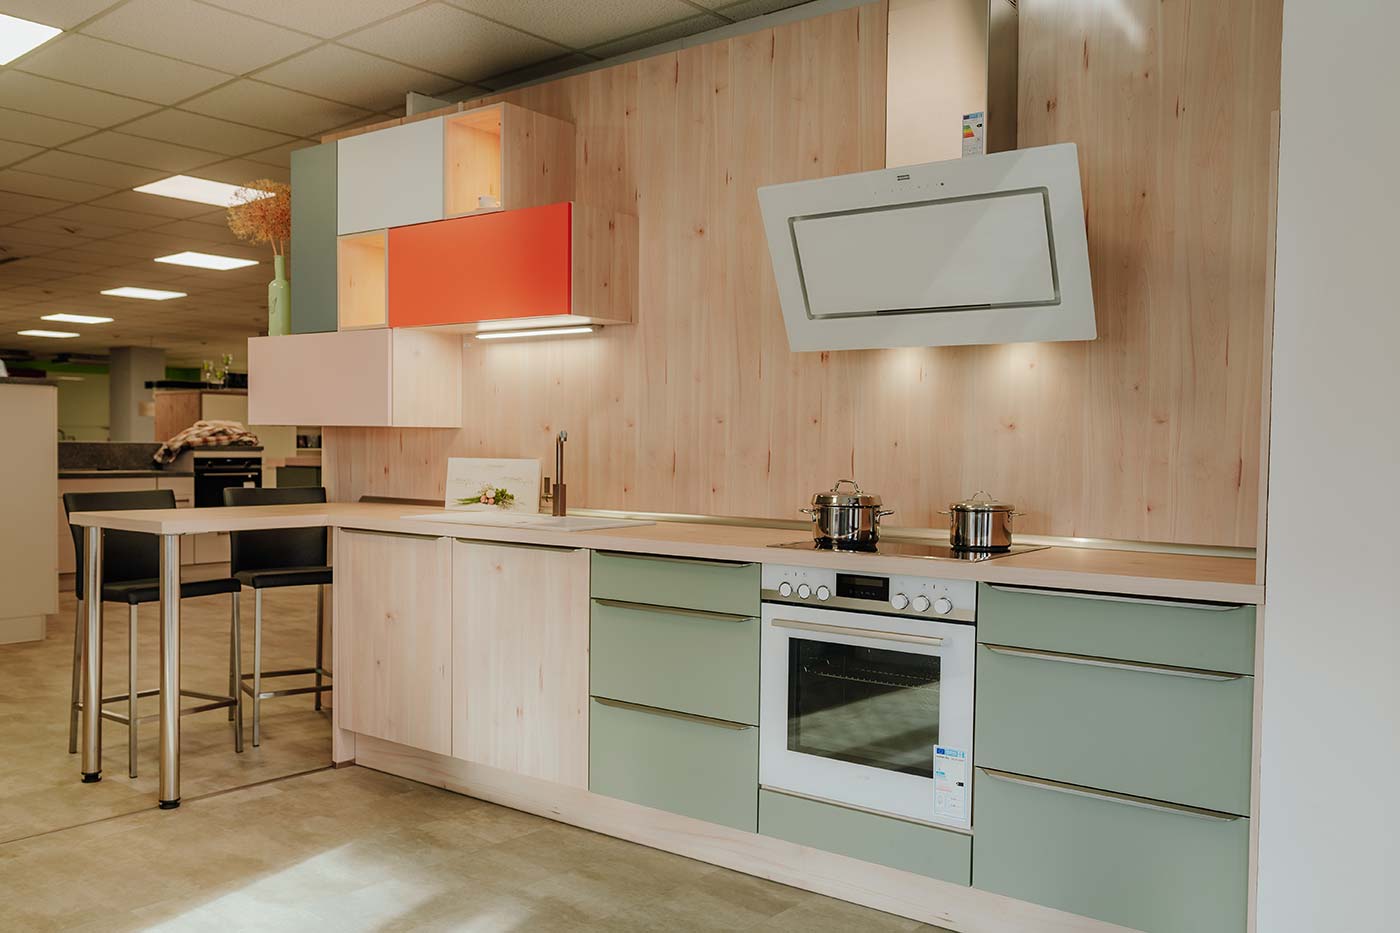 Küche aus Holz mit Fronten in orange & mintgrün und weißer Dunstabzugshaube in der Küchenausstellung Matthäs